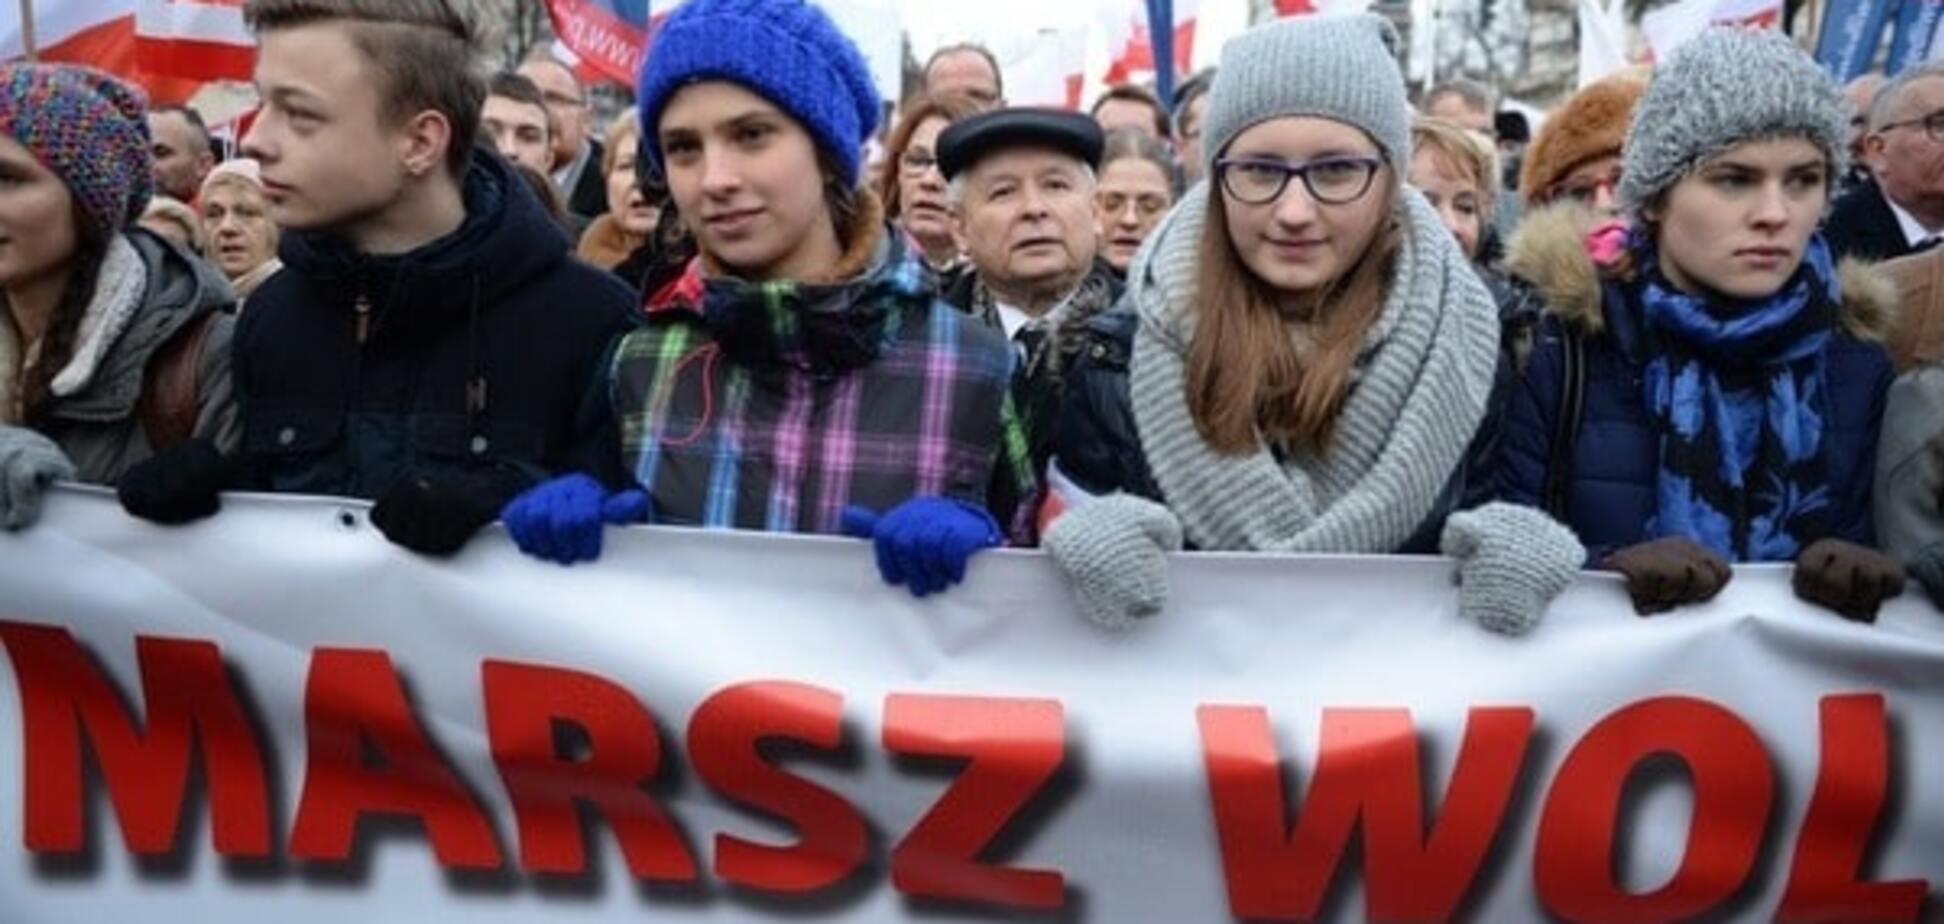 За демократию: на улицы Варшавы вышли 50 тыс. демонстрантов